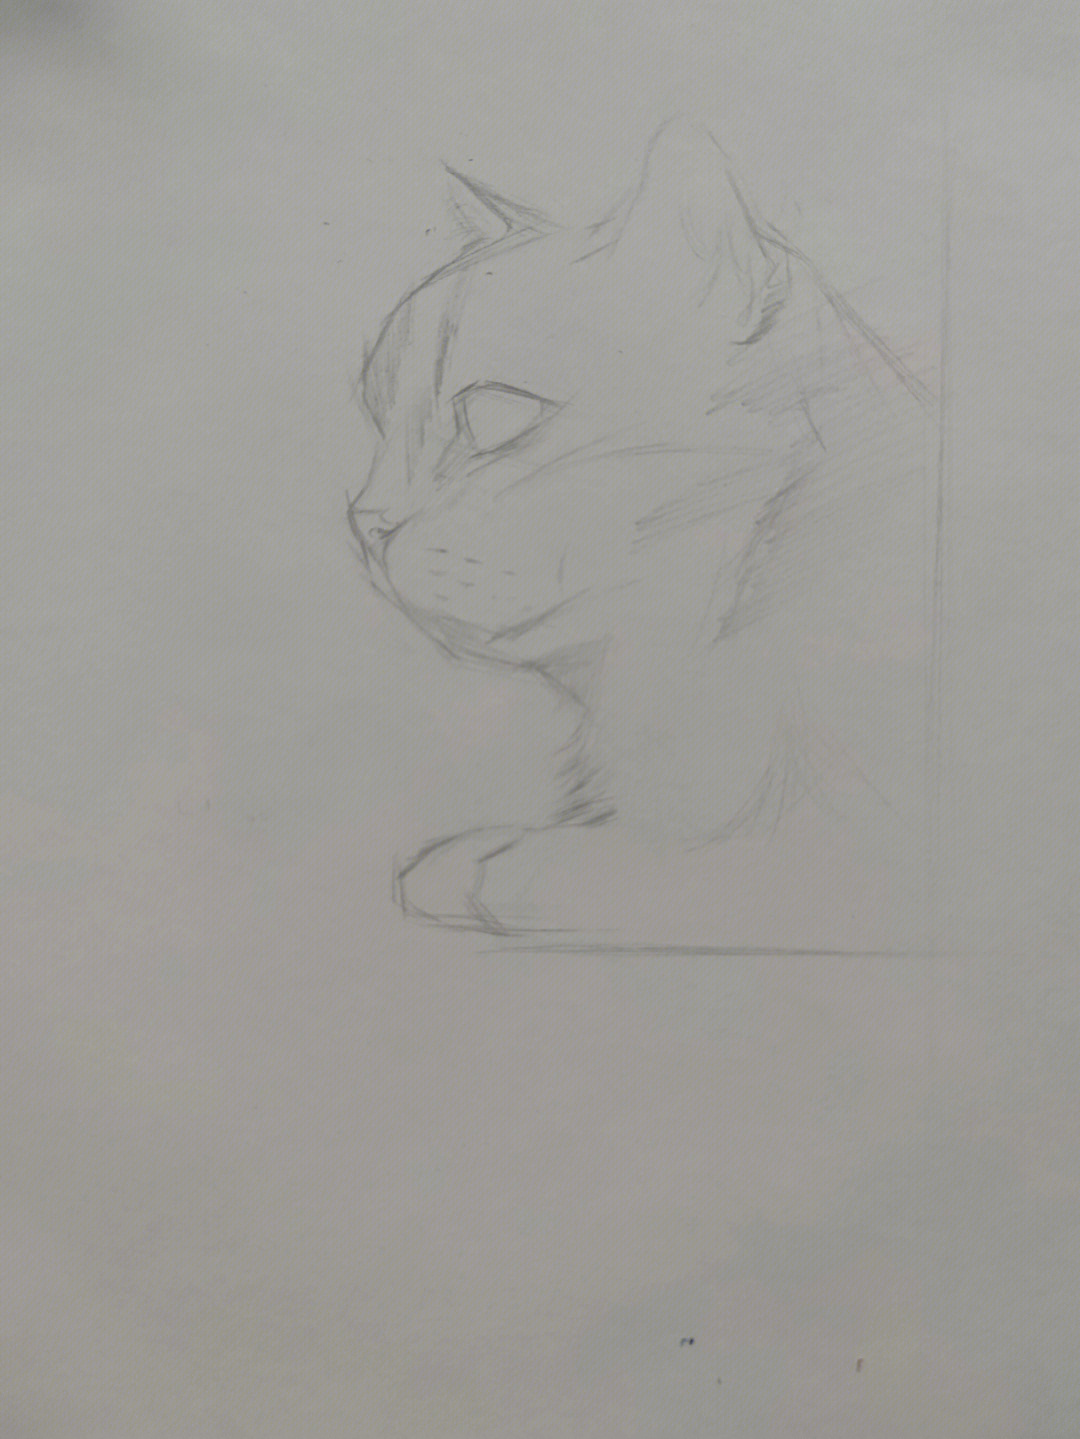 画猫素描步骤图解法图片